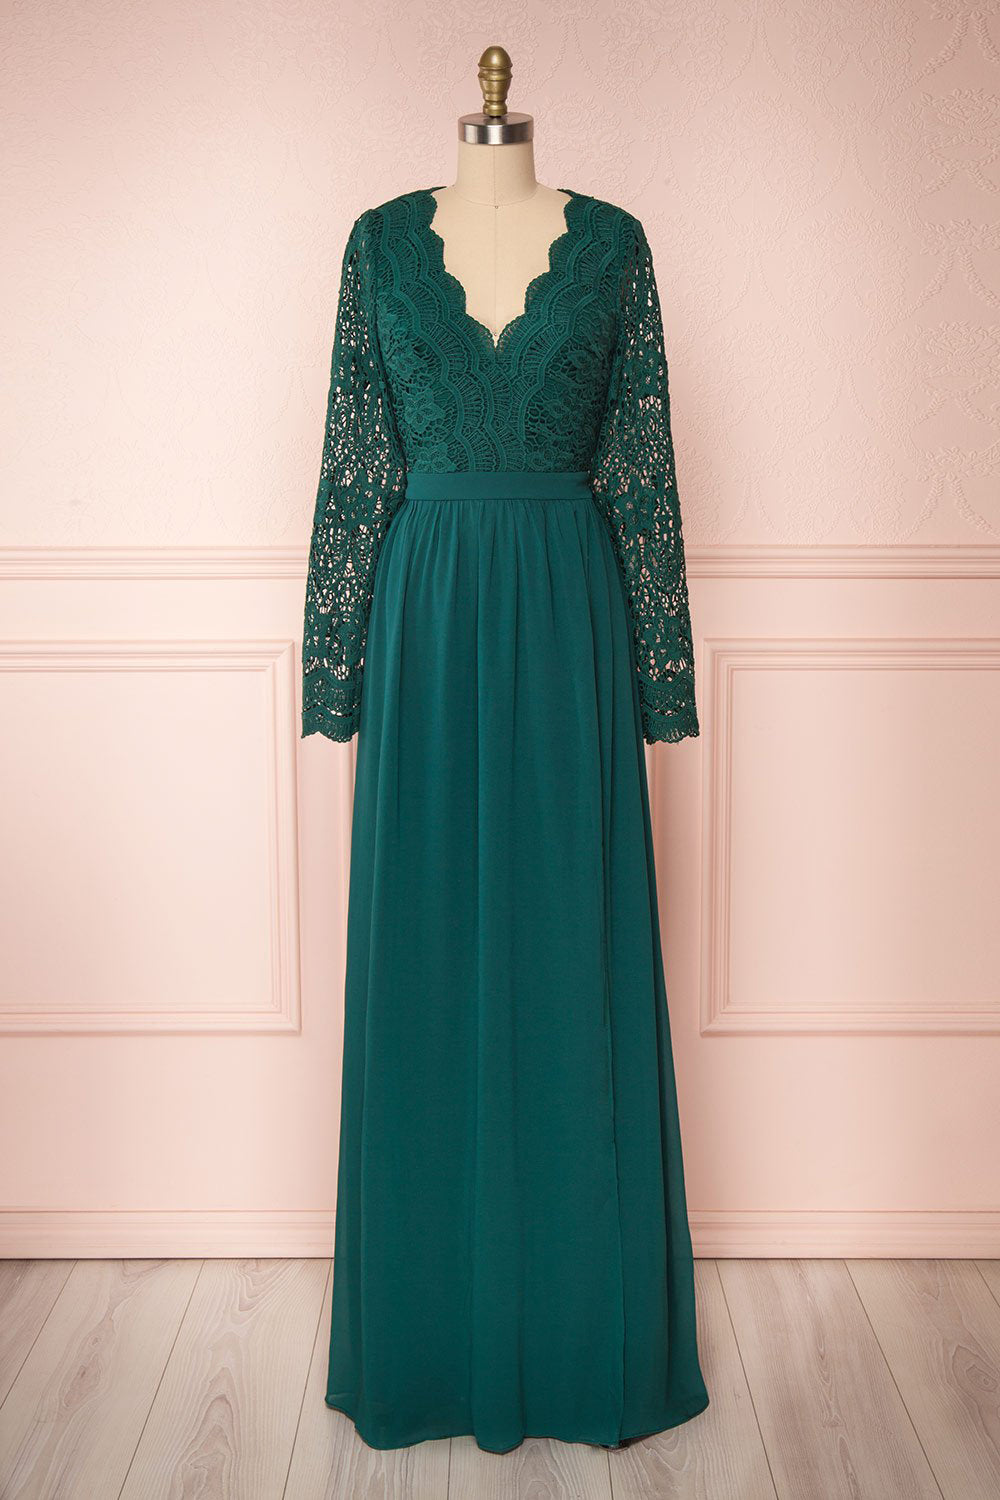 Dottie Emerald Green Lace & Chiffon Gown | Boutique 1861 plus